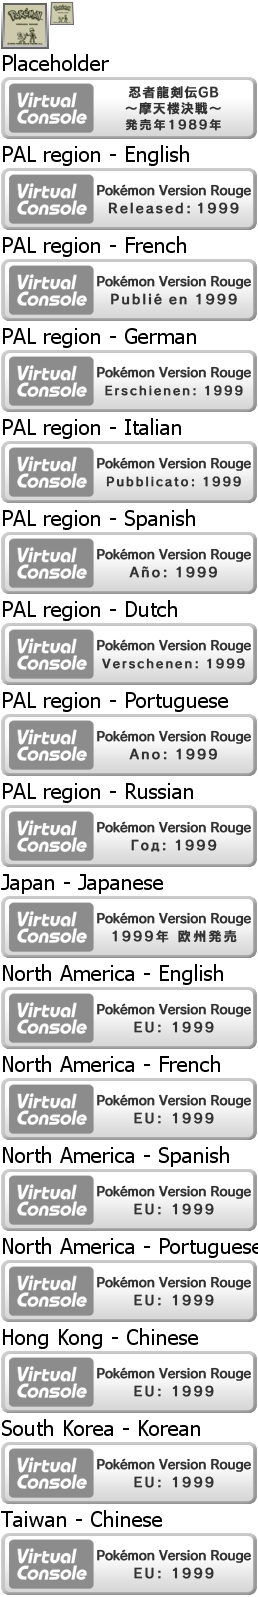 Virtual Console - Pokémon Version Rouge